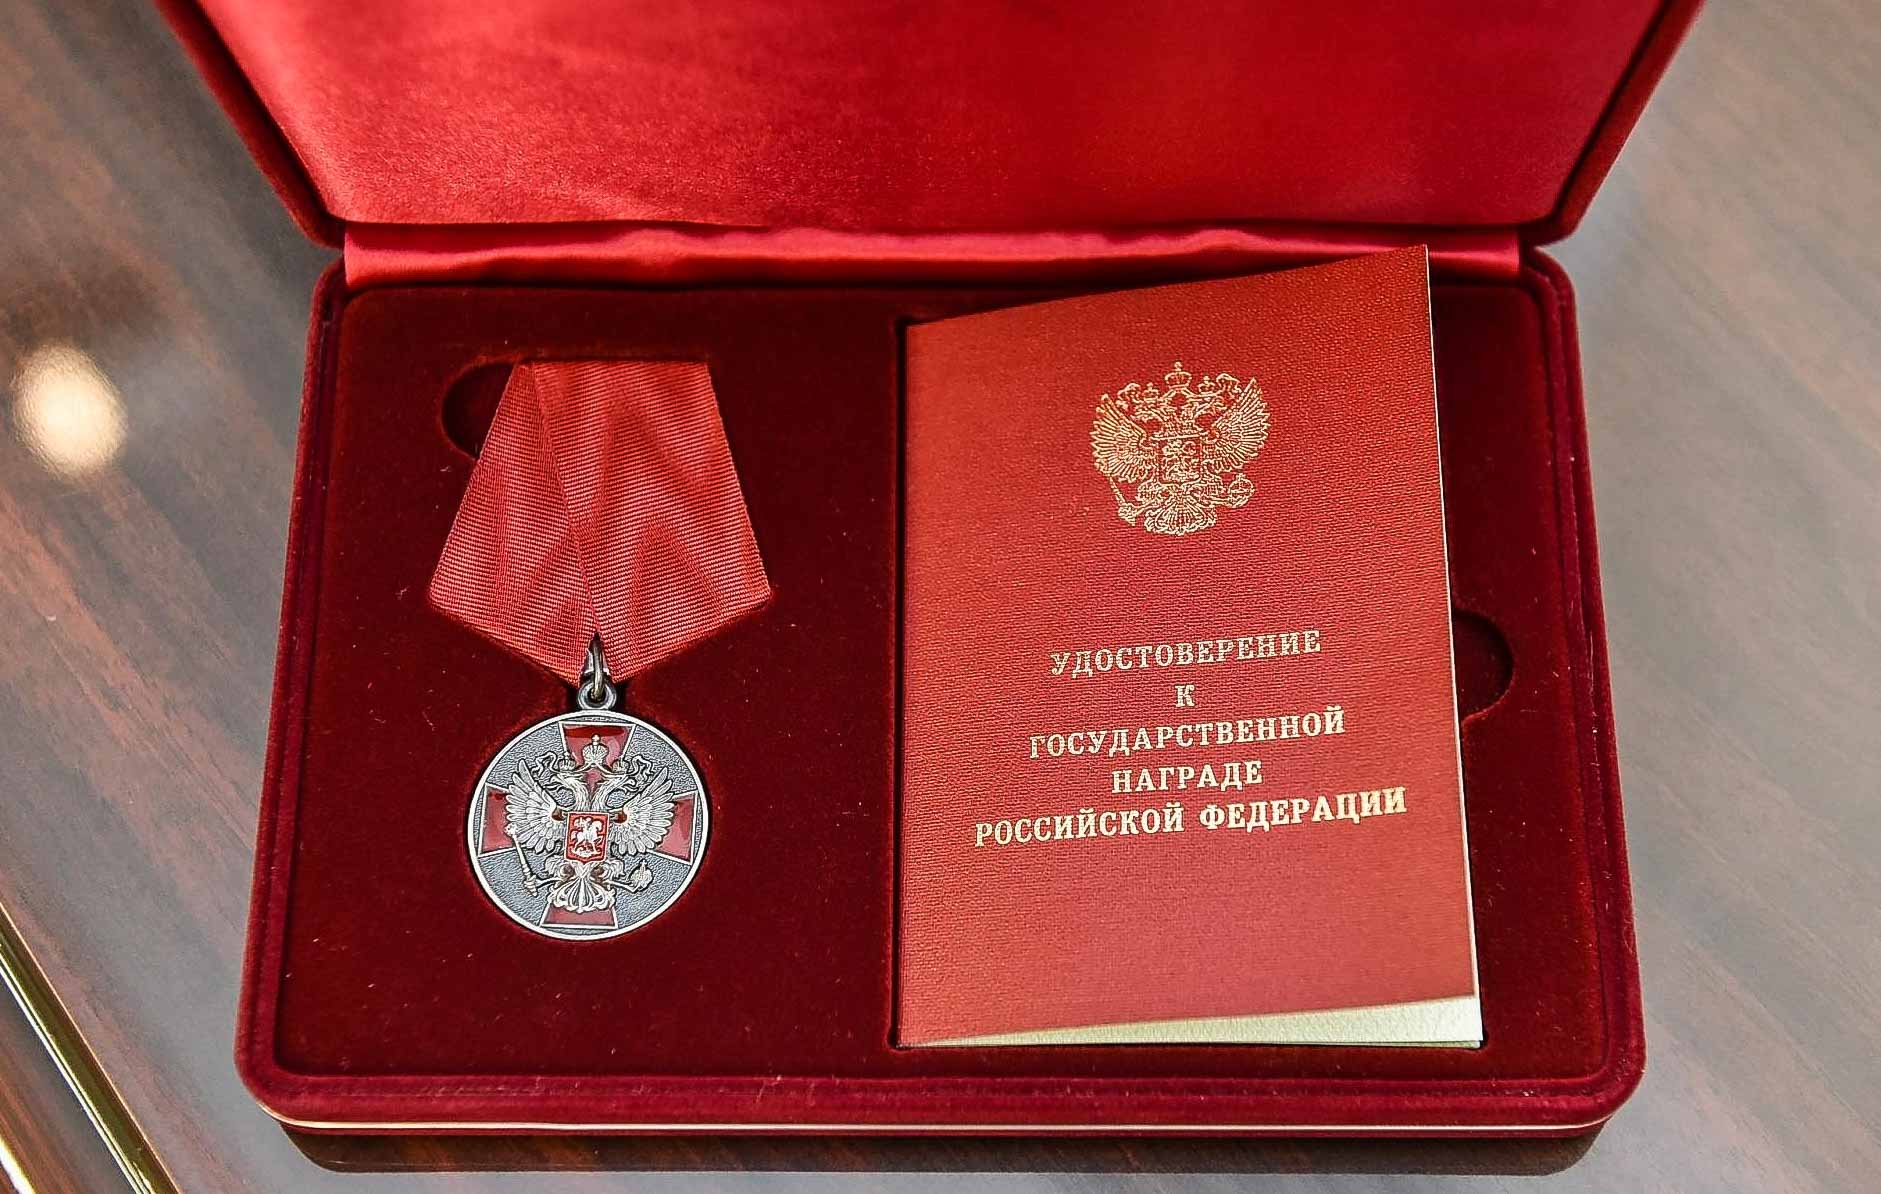 Председатель сельхозартели из Саратовской области удостоен государственной награды